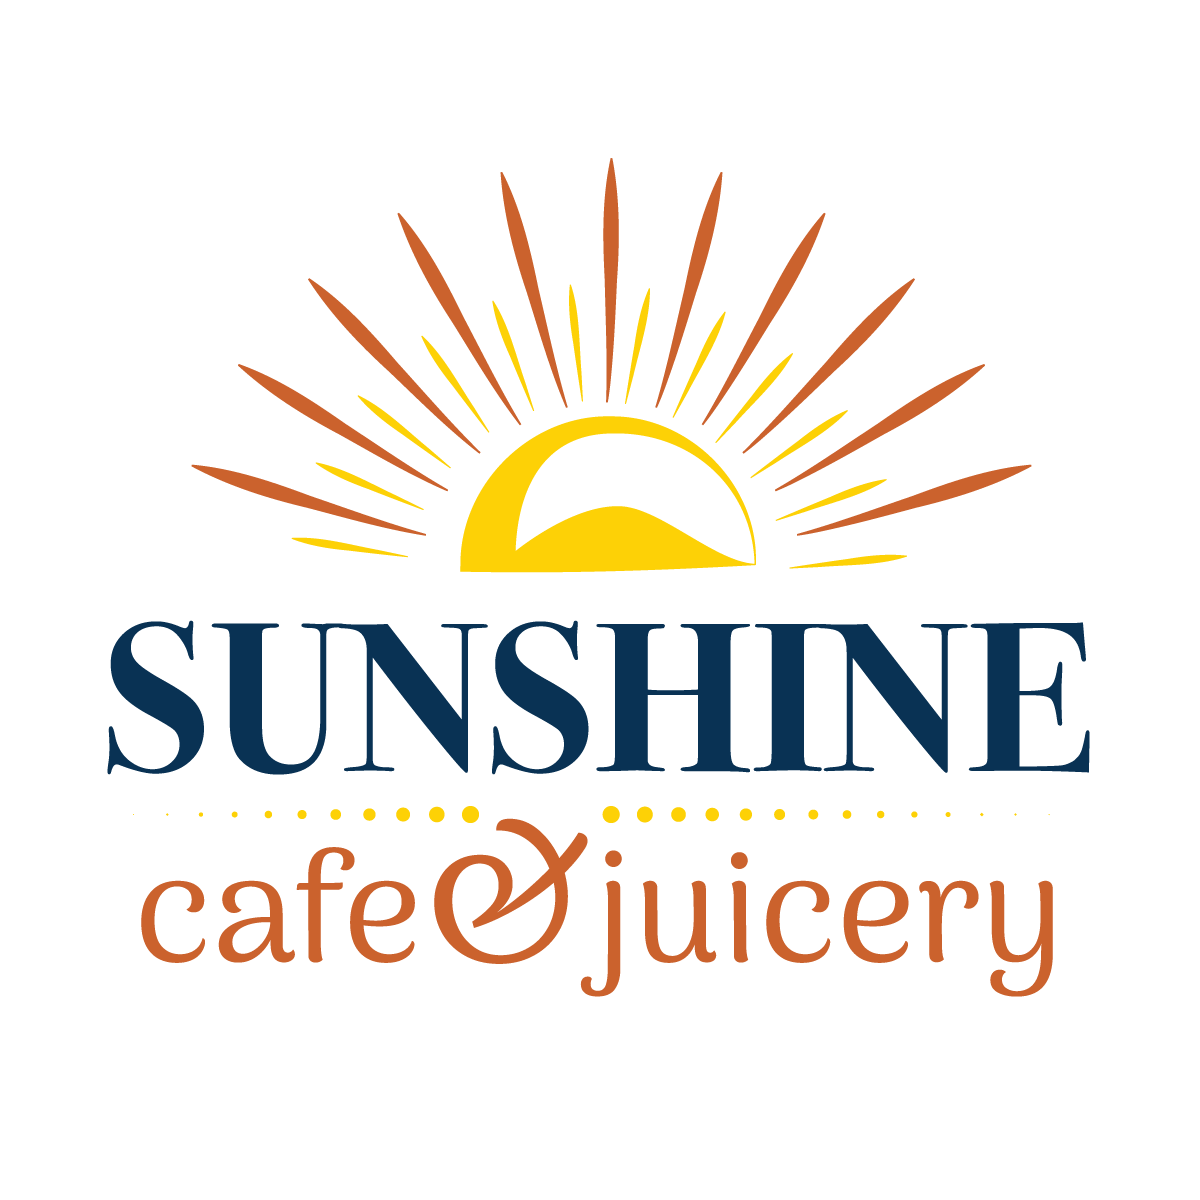 Sunshine Cafe and Juicery 2726 N. Mt Juliet Road